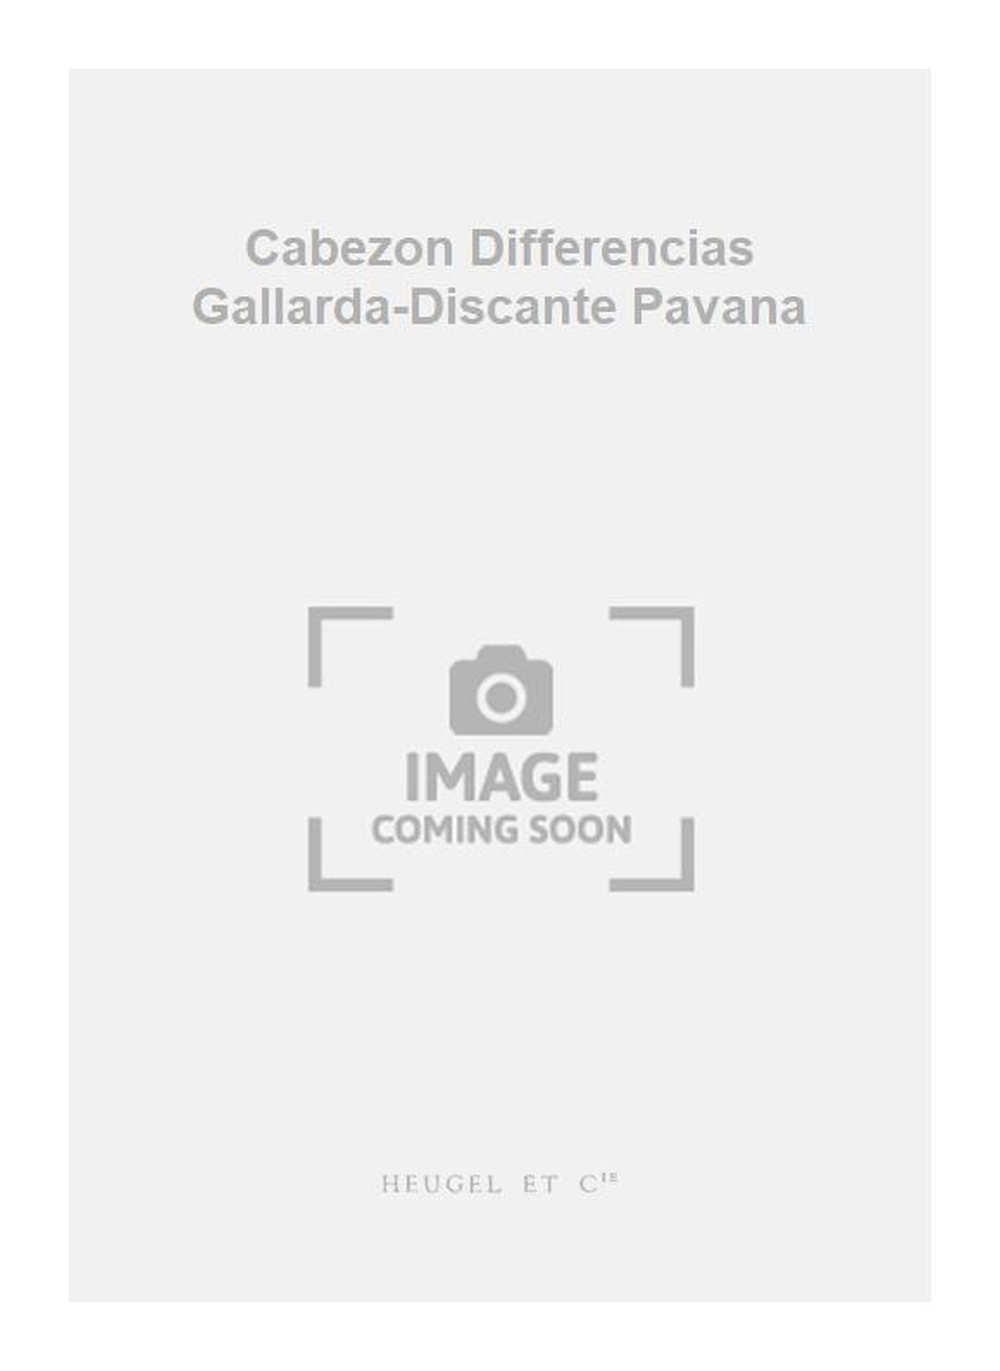 Antonio de Cabezón: Cabezon Differencias Gallarda-Discante Pavana